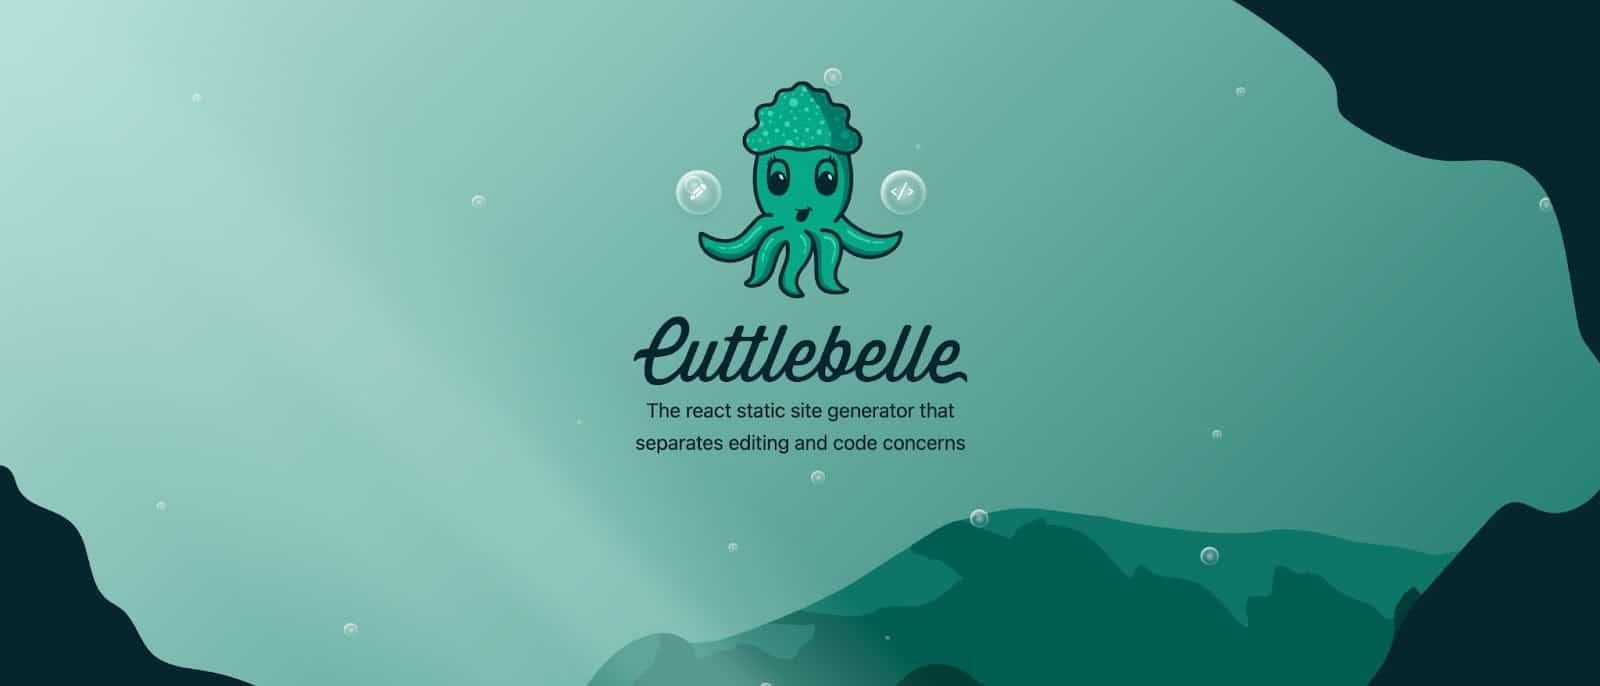 Cuttlebelle ウェブサイトのホームページ